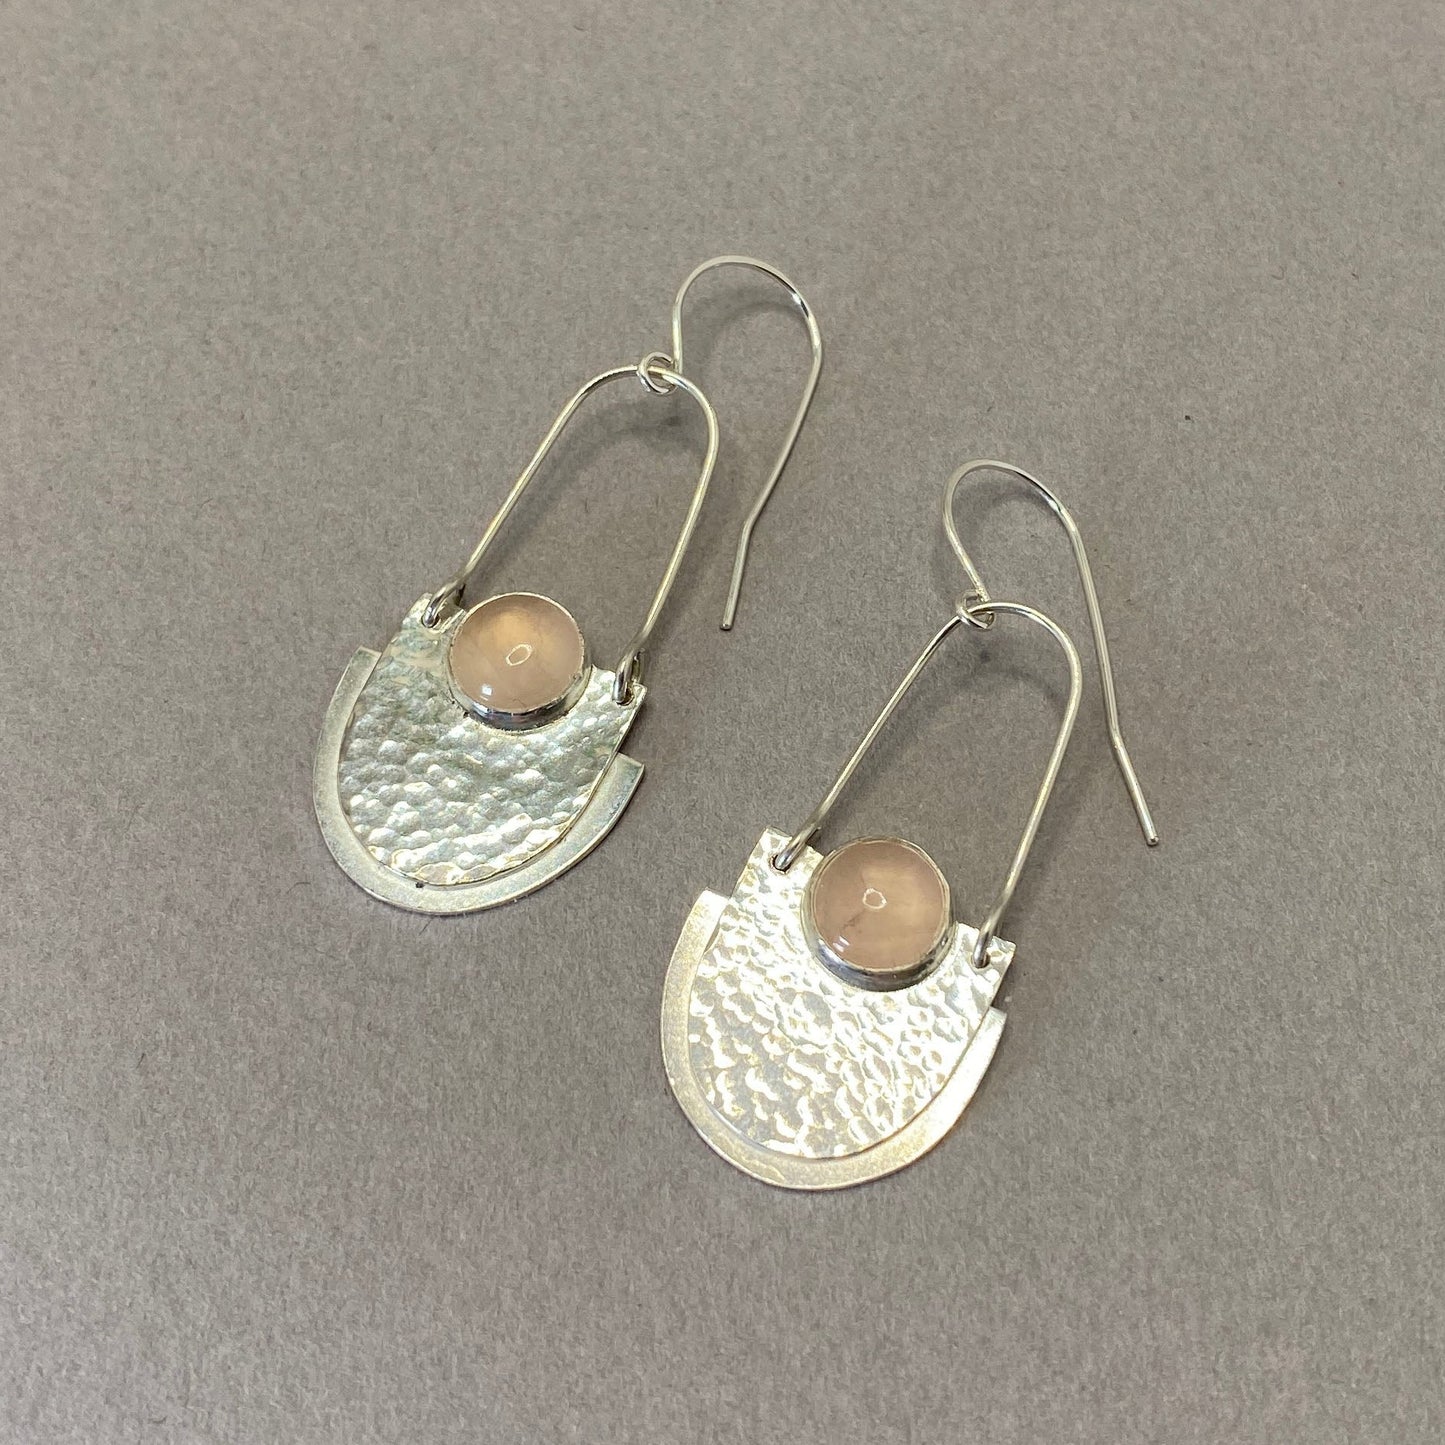 Art deco sterling silver hook chandelier earrings with rose quartz